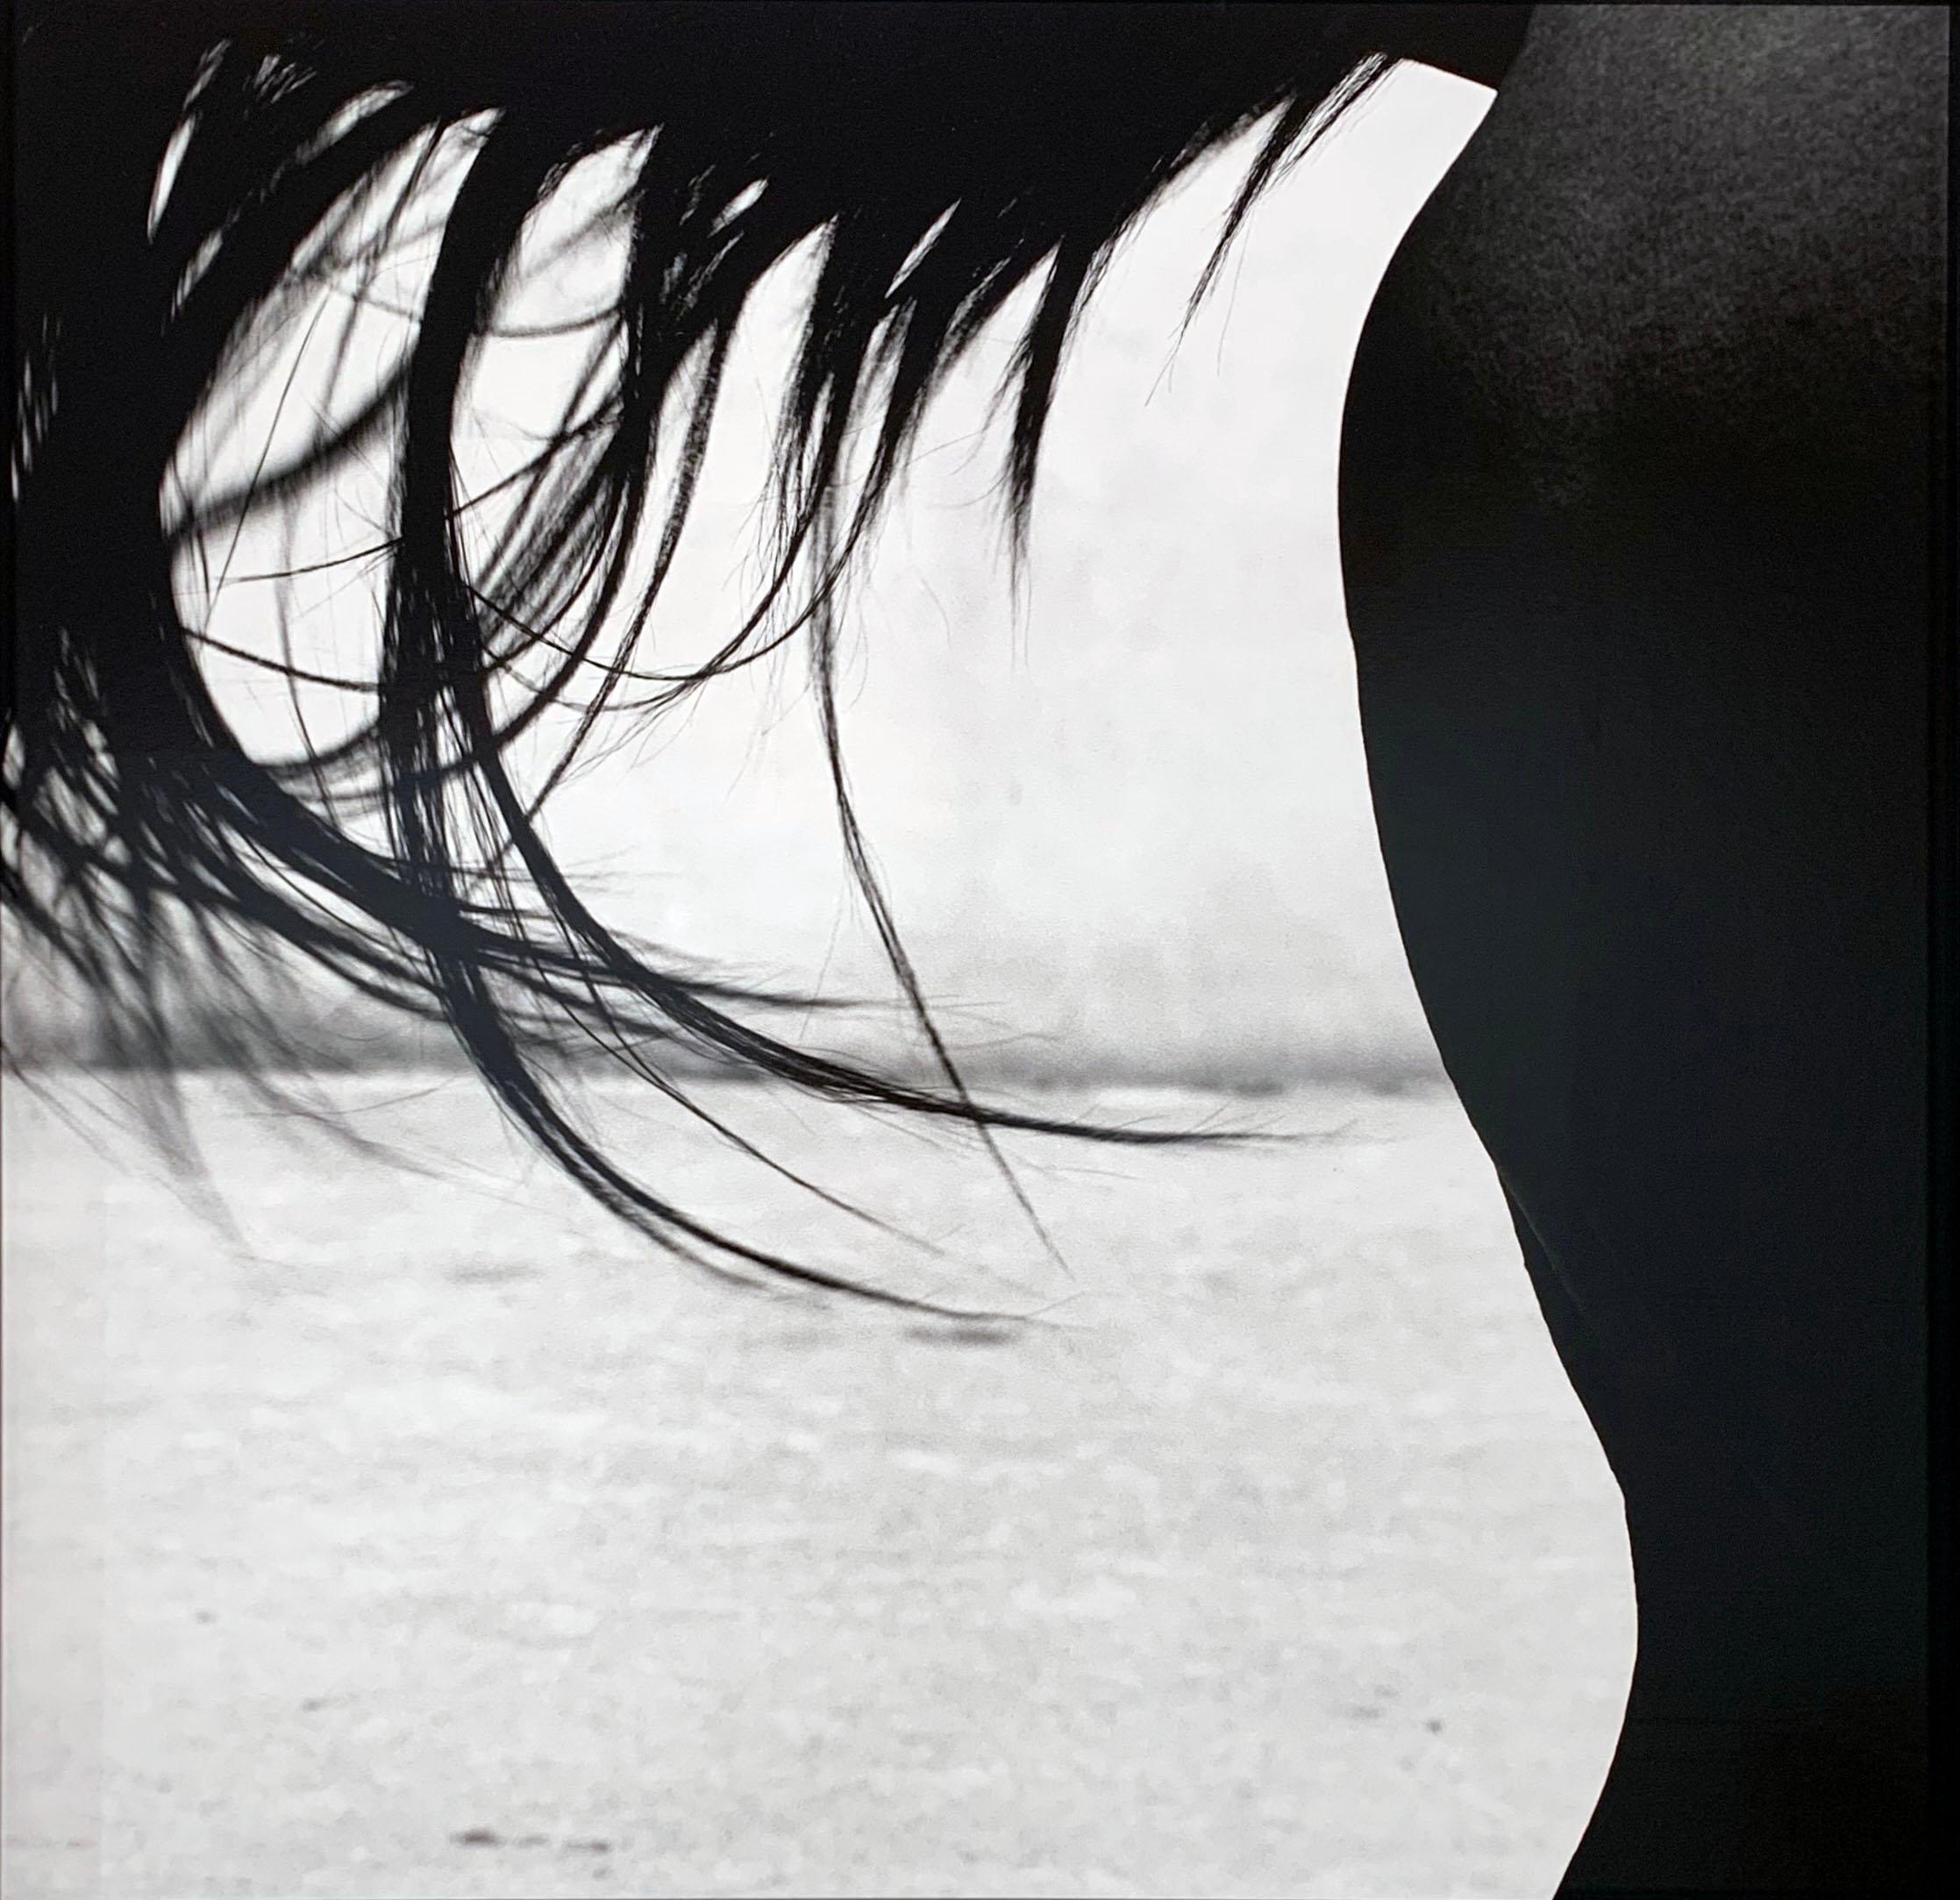 Black and White Photograph John Reardon - Xaar - Cheval à queue, détail étalon abstrait, impression à la gélatine argentique sur aluminium